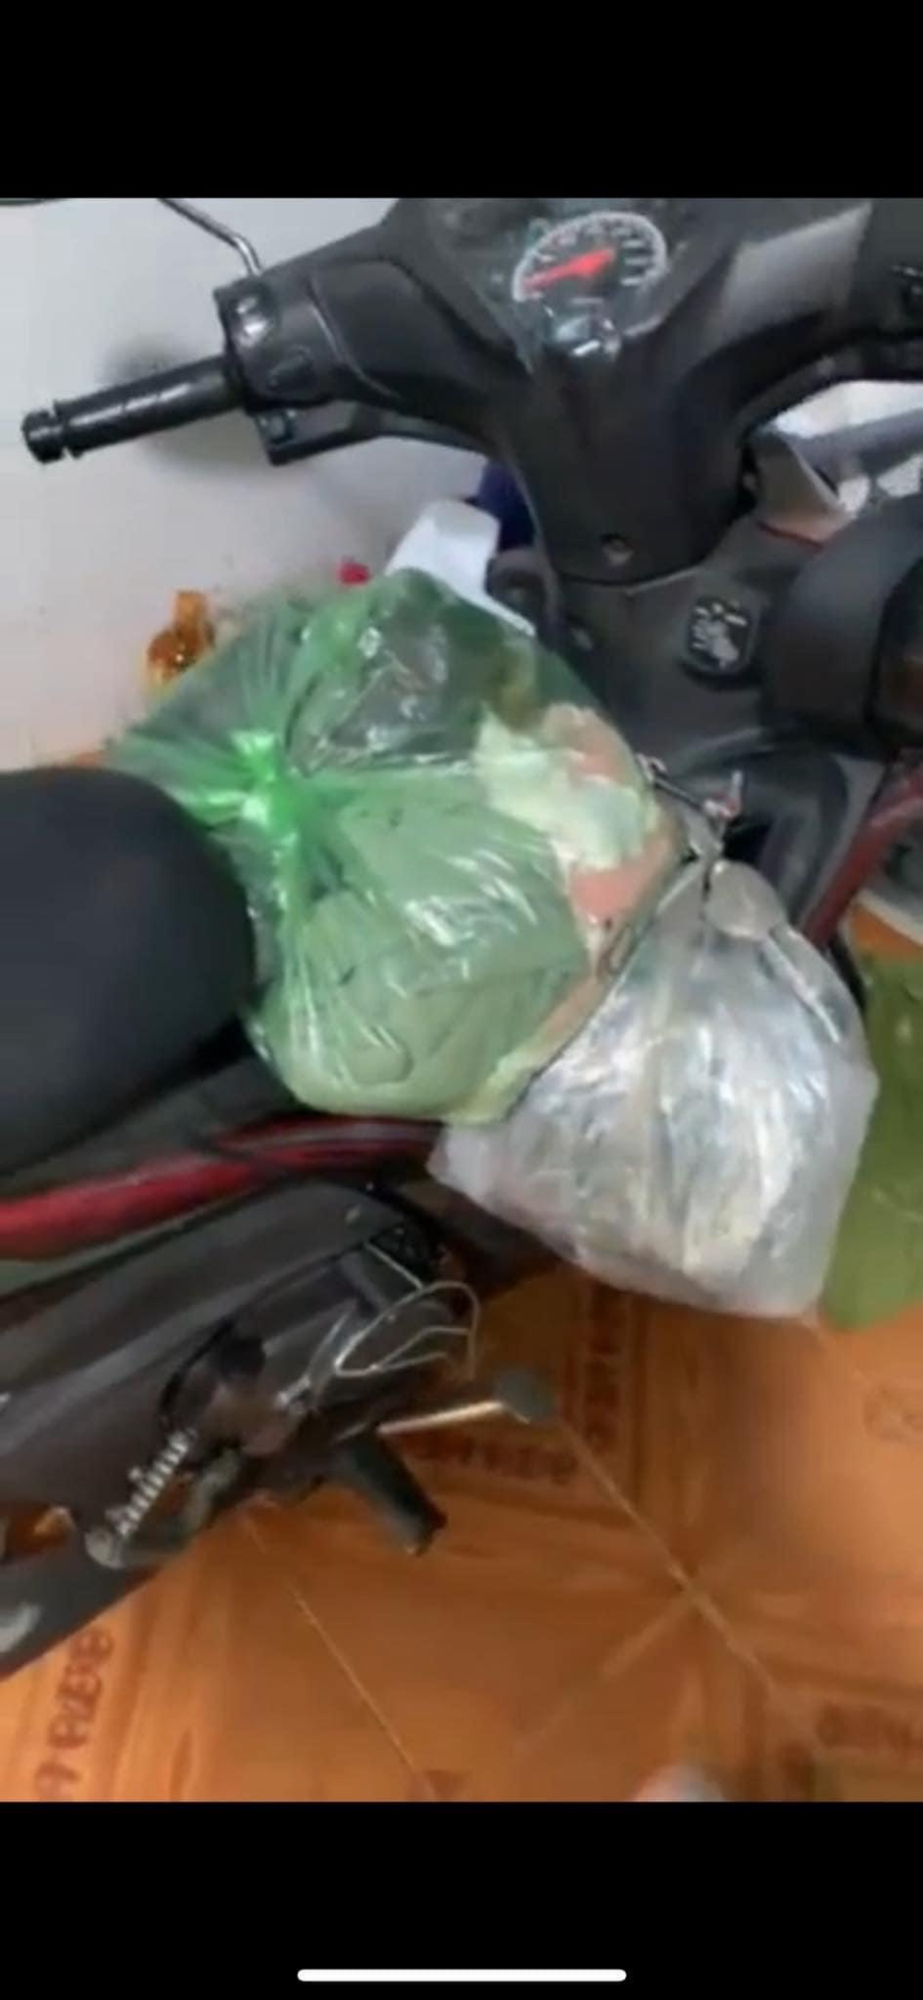 Cô gái ở TP Thủ Đức mất tích nhiều ngày khi về quê ăn Tết: Phát hiện xe máy, các túi đồ chuẩn bị mang về quê - Ảnh 3